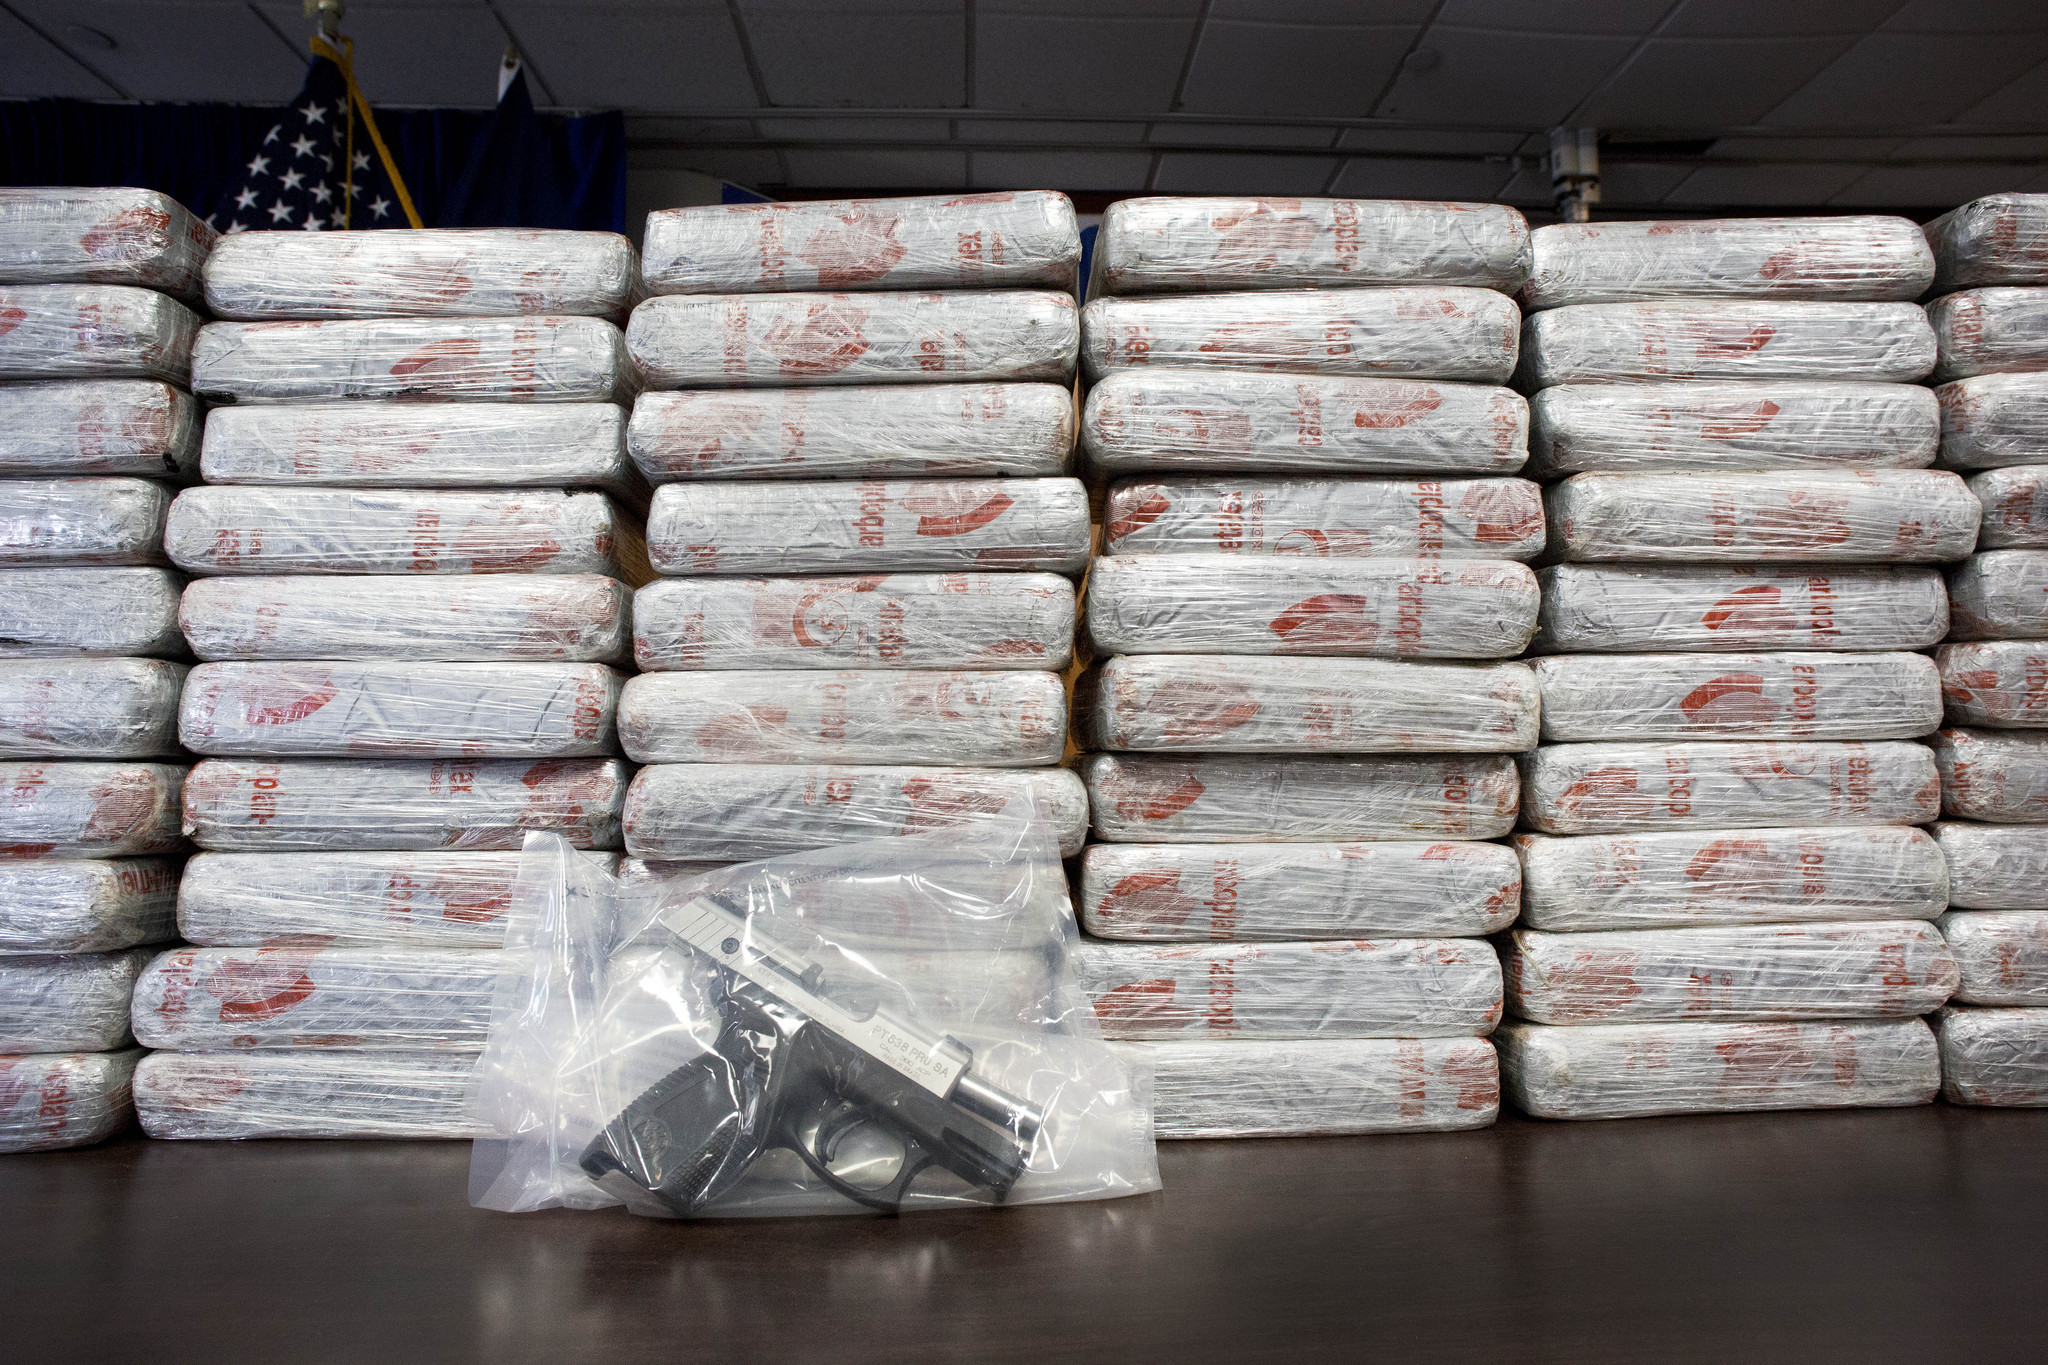  Confiscan en Nueva York más de 33 kilos de heroína proveniente de México